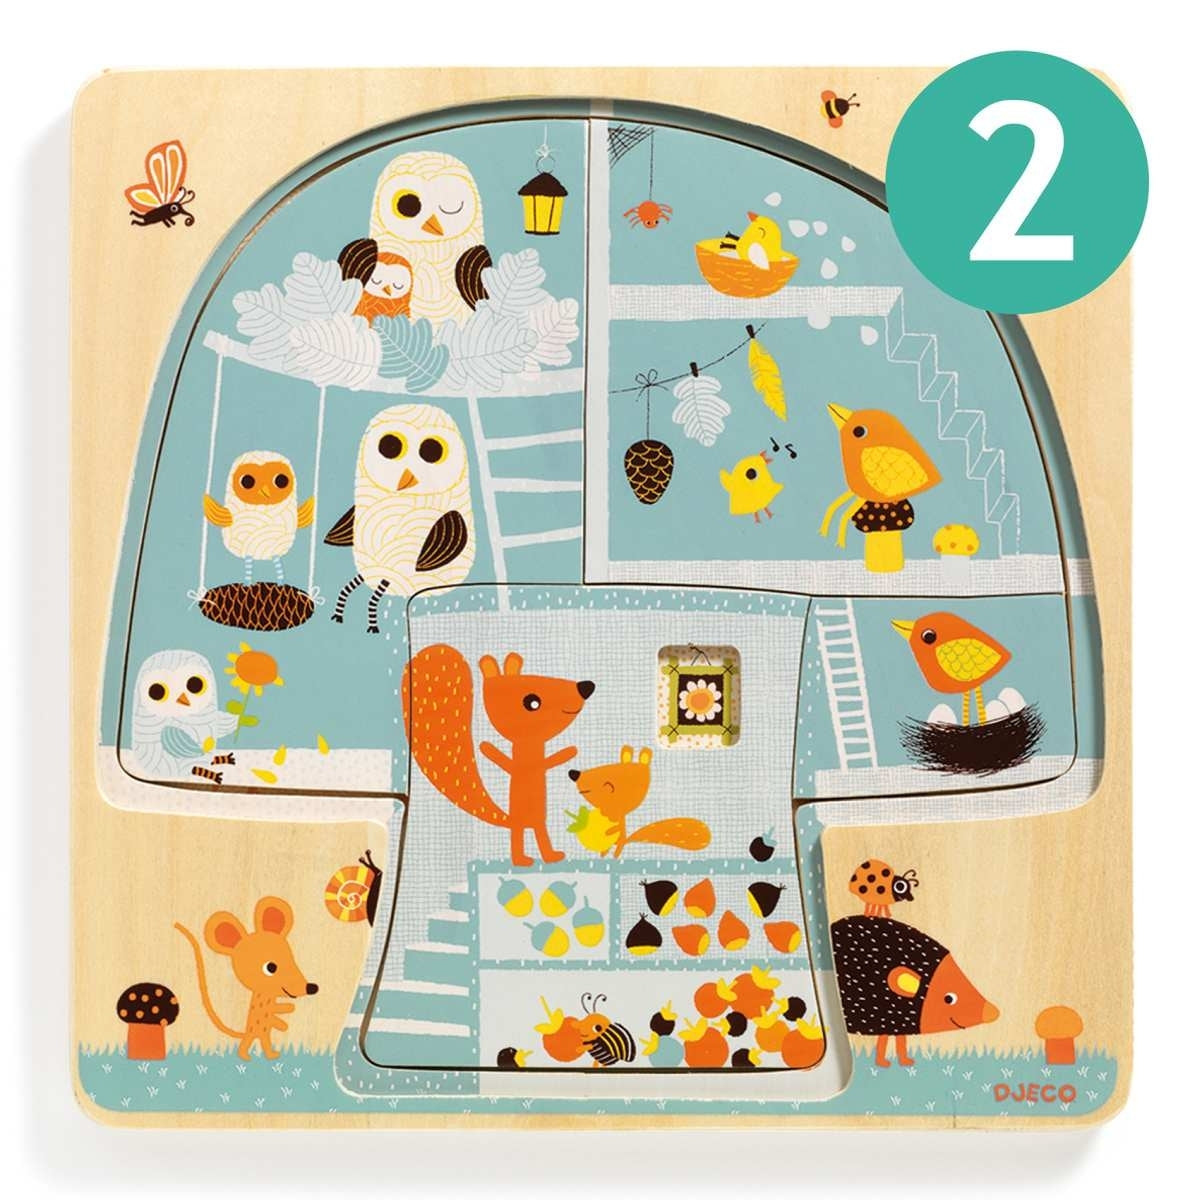 Das 3-Ebenen-Puzzle Chez-Nut ist ein 12-teiliges Holzpuzzle. Jede Ebene umfasst ein Puzzle mit mehreren zusammenzusetzenden Teilen. Je mehr Teile das Kind einsetzt, desto besser erkennt es das Leben der Tiere im Baum.